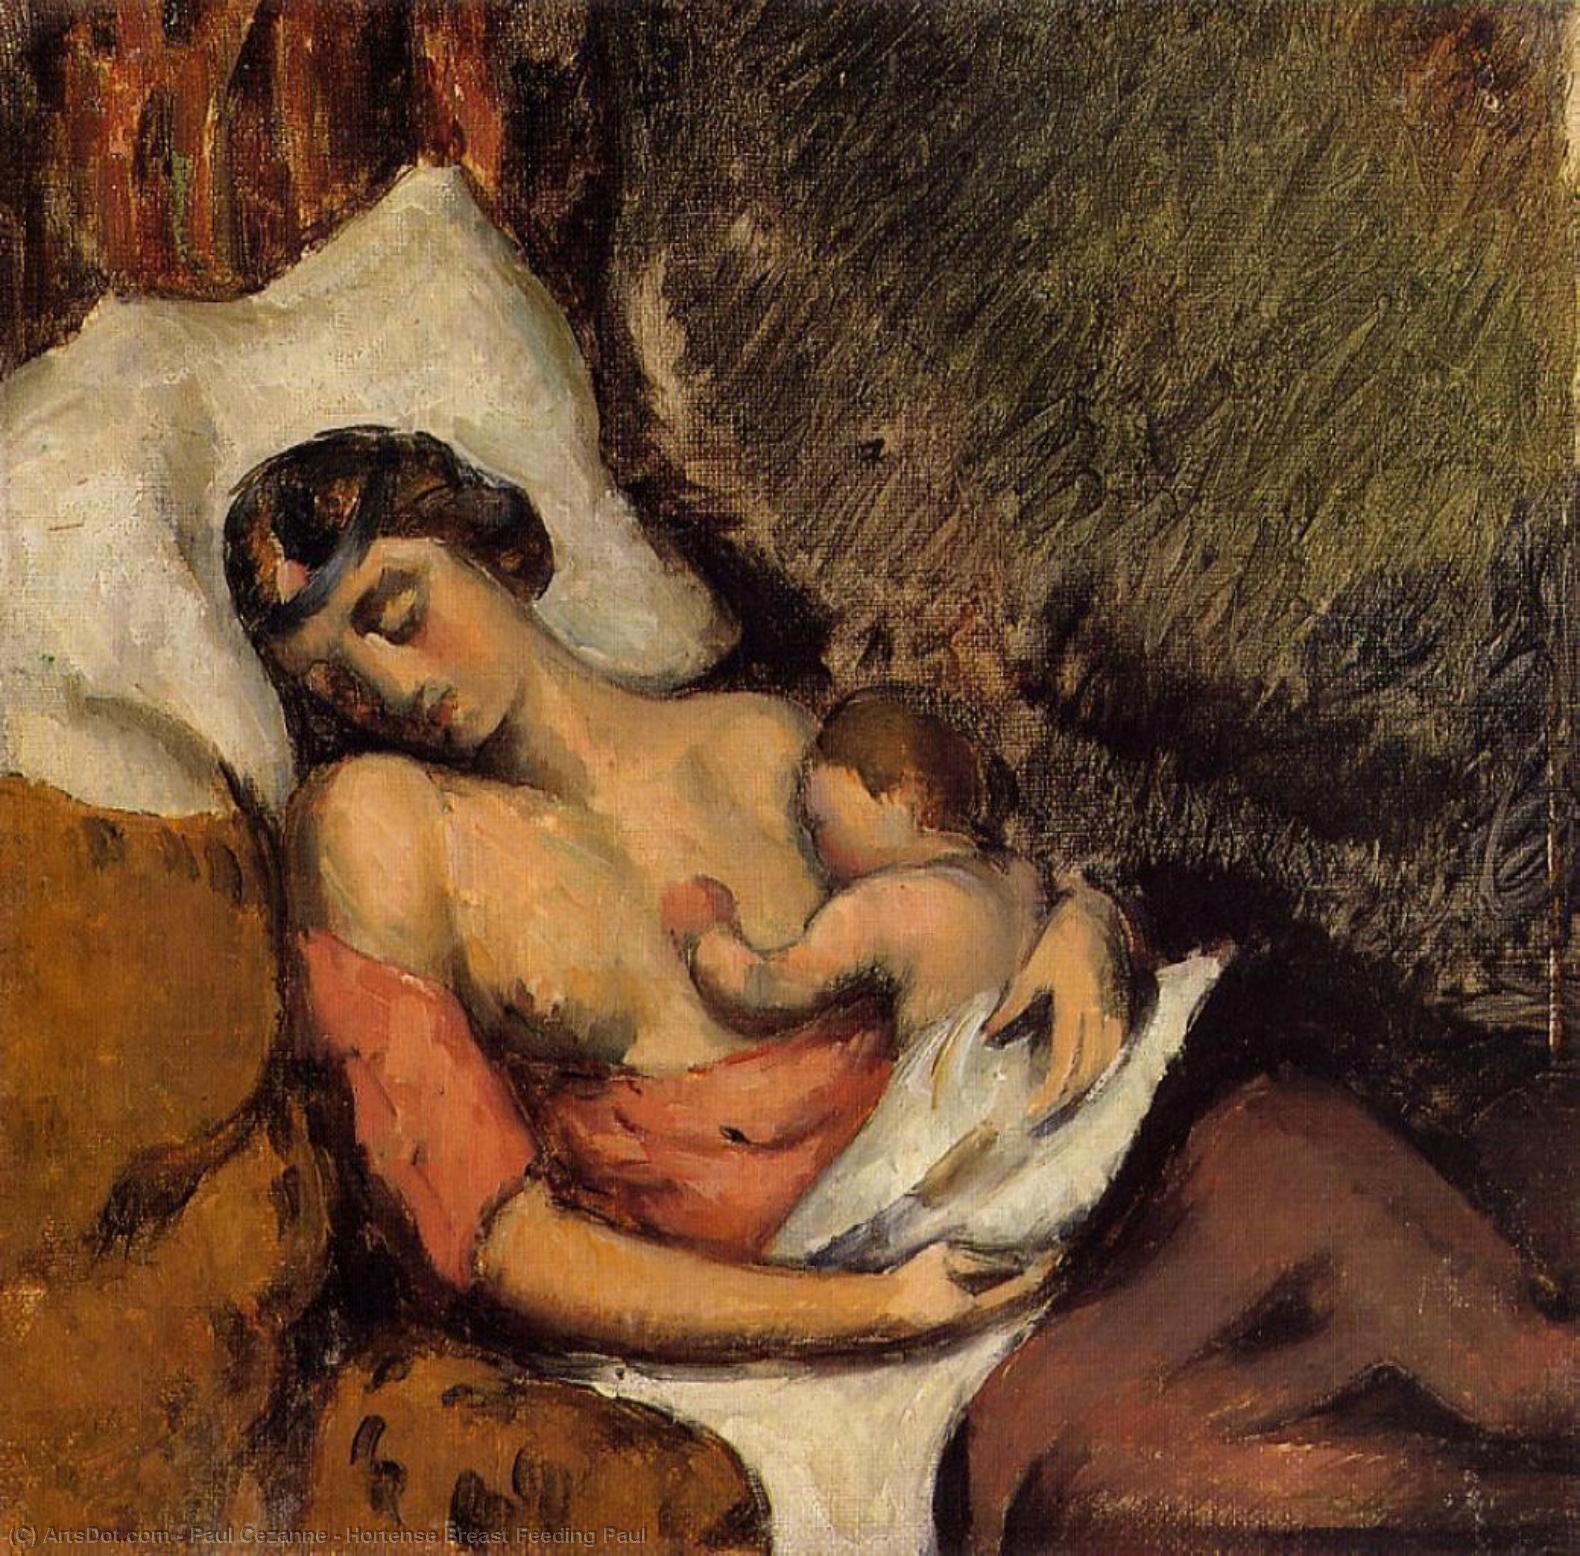 WikiOO.org - Encyclopedia of Fine Arts - Malba, Artwork Paul Cezanne - Hortense Breast Feeding Paul